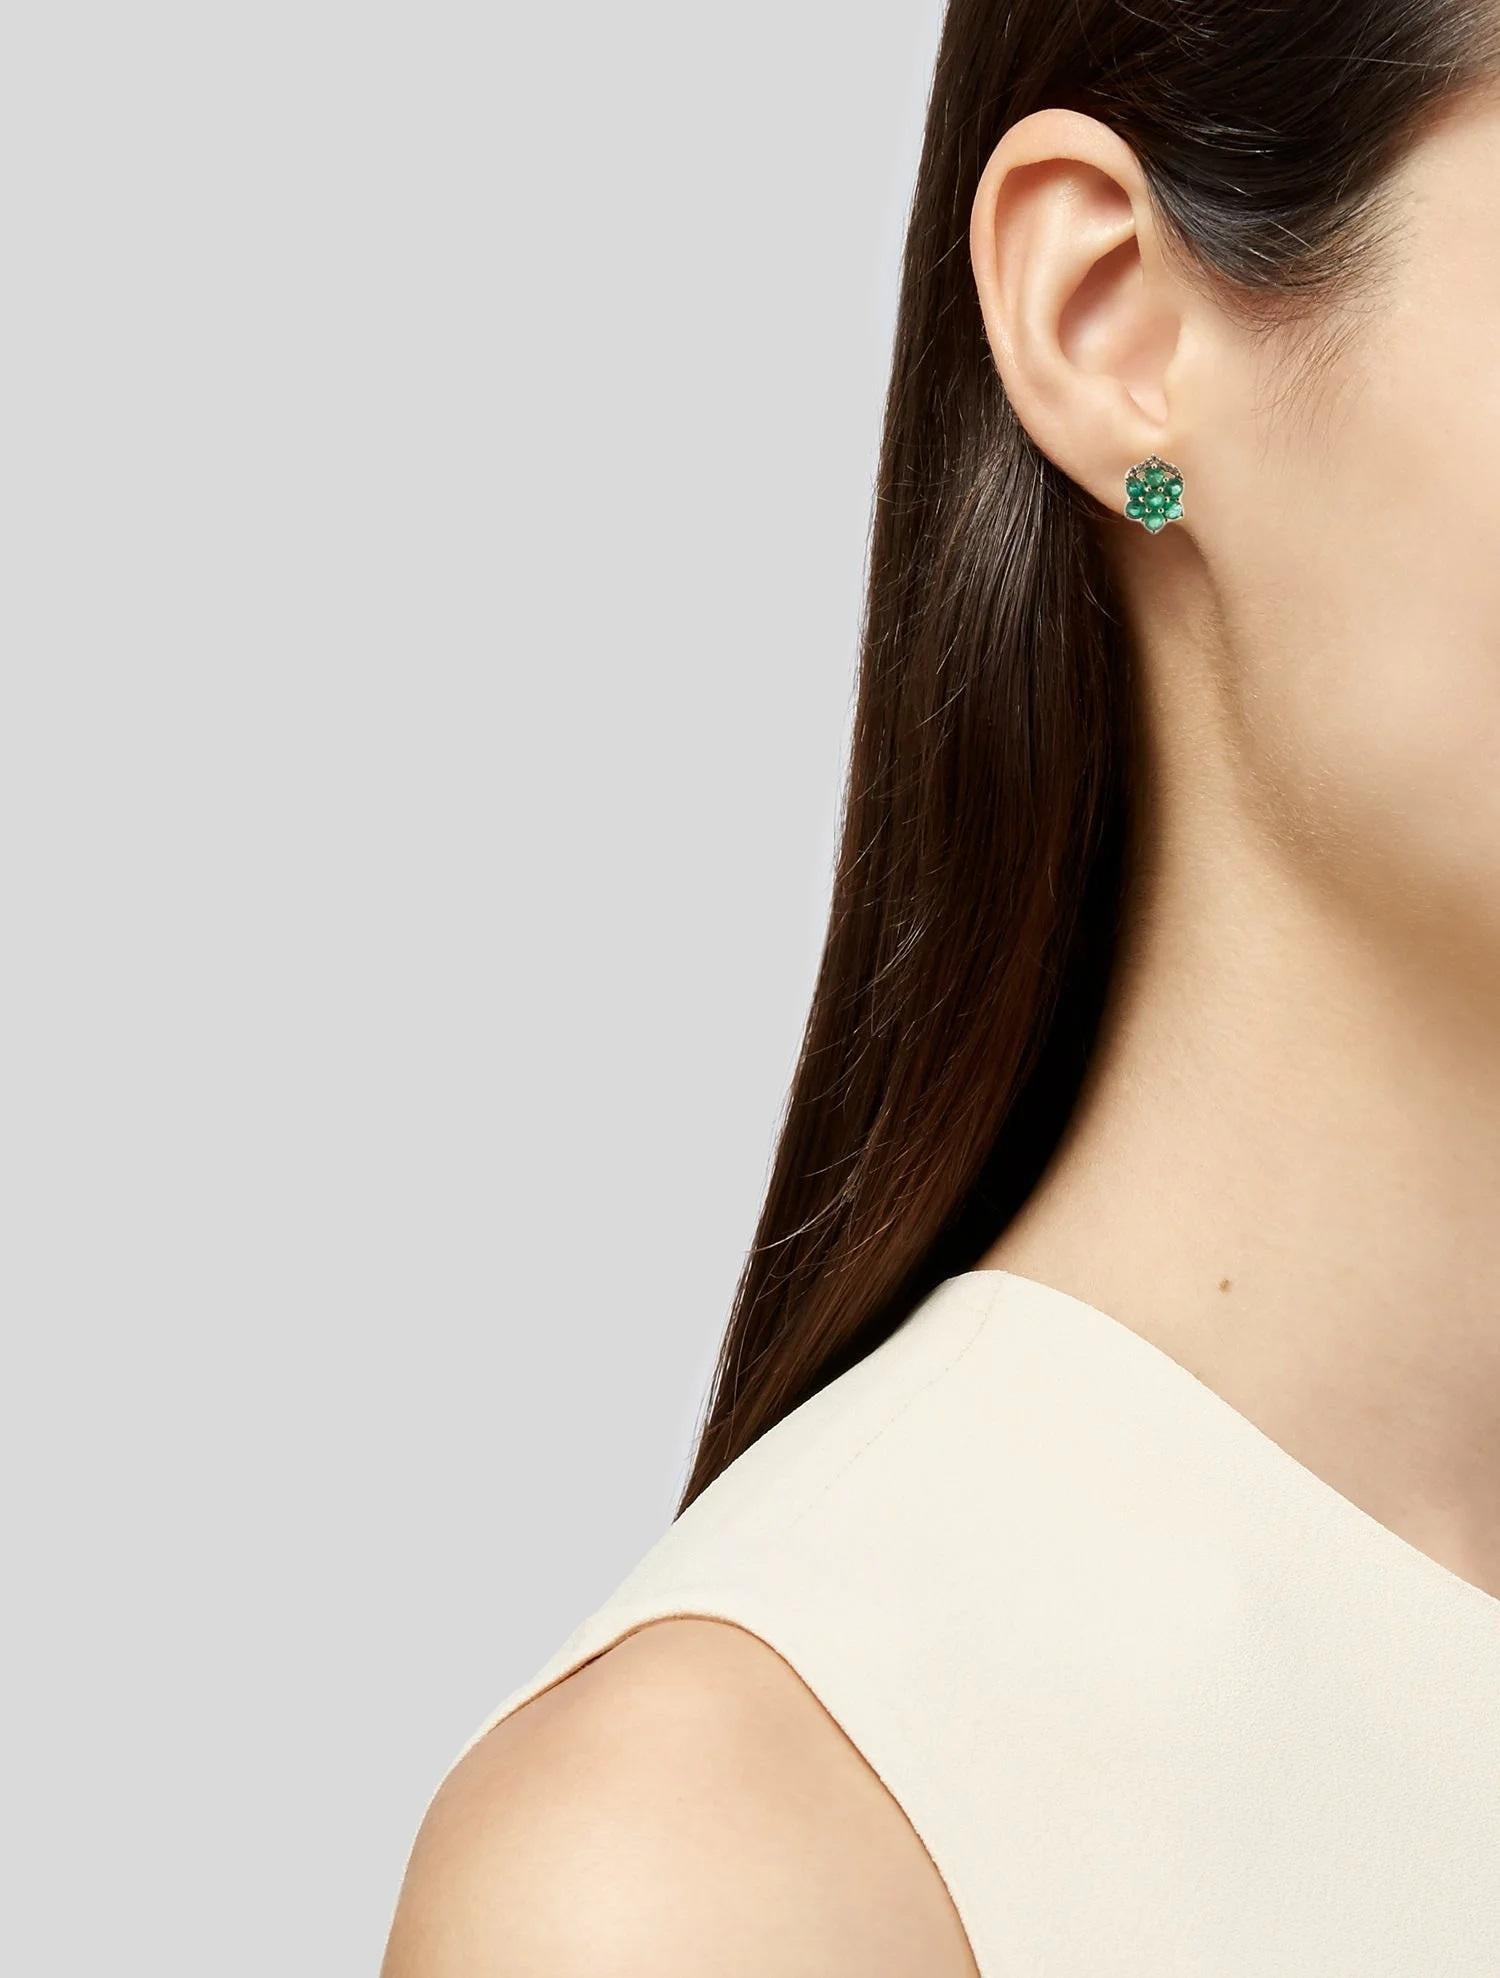 Werten Sie Ihr Ensemble mit diesen exquisiten 14K Smaragd- und Diamant-Tropfenohrringen auf. Diese Ohrringe aus luxuriösem Gelbgold bestechen durch einen runden, brillanten Smaragd mit einem Gewicht von 1,41 Karat, der einen satten grünen Farbton